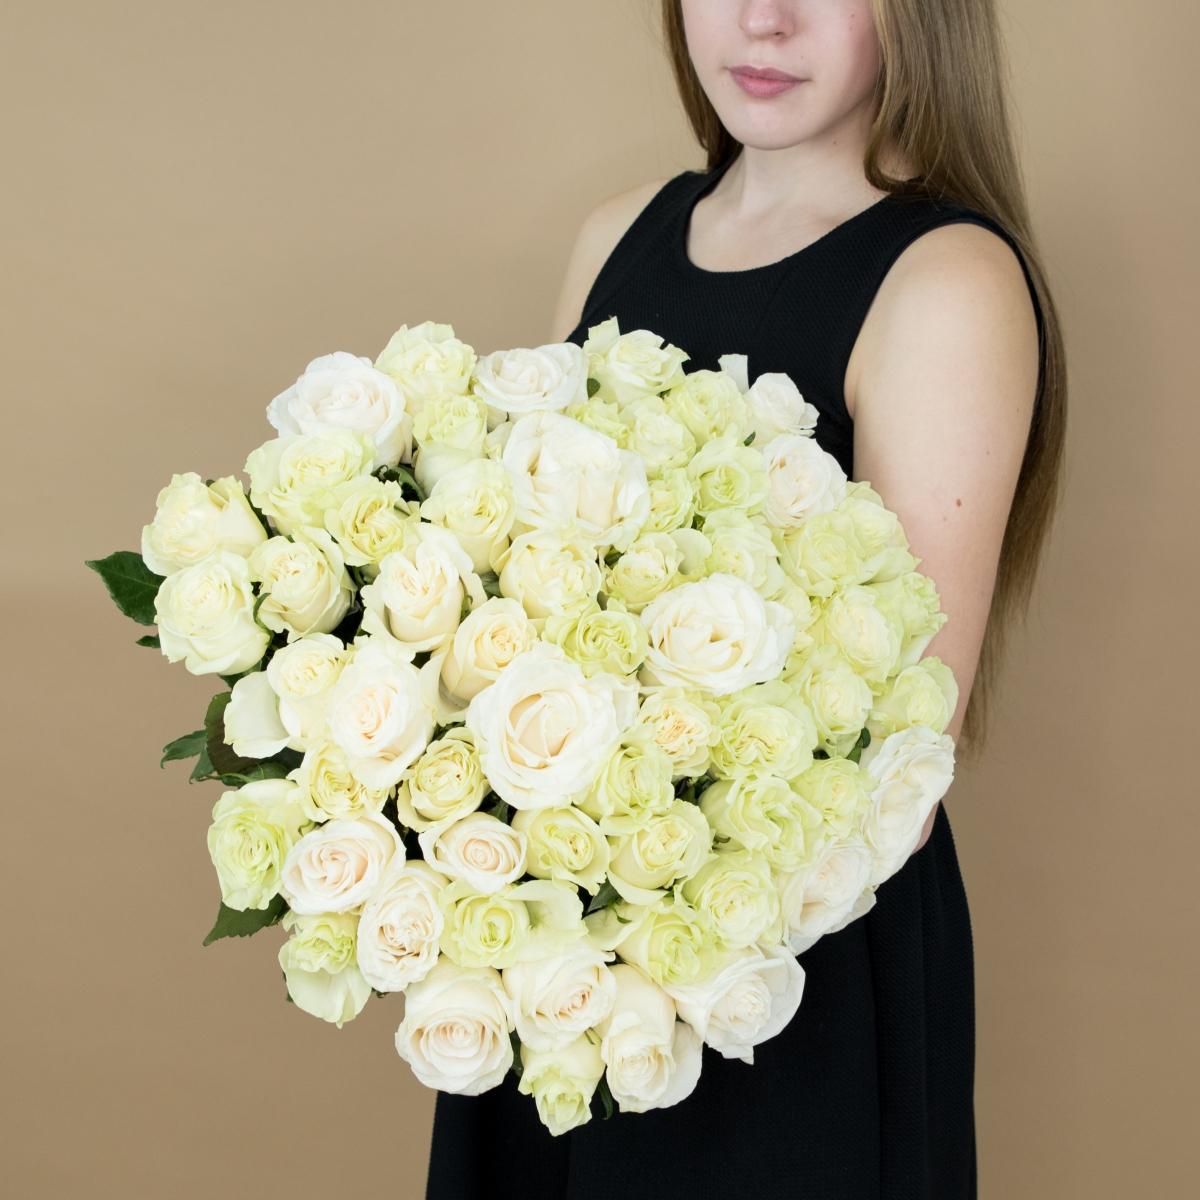 Букет из белых роз 101 шт 40 см (Эквадор) артикул: 19980nv